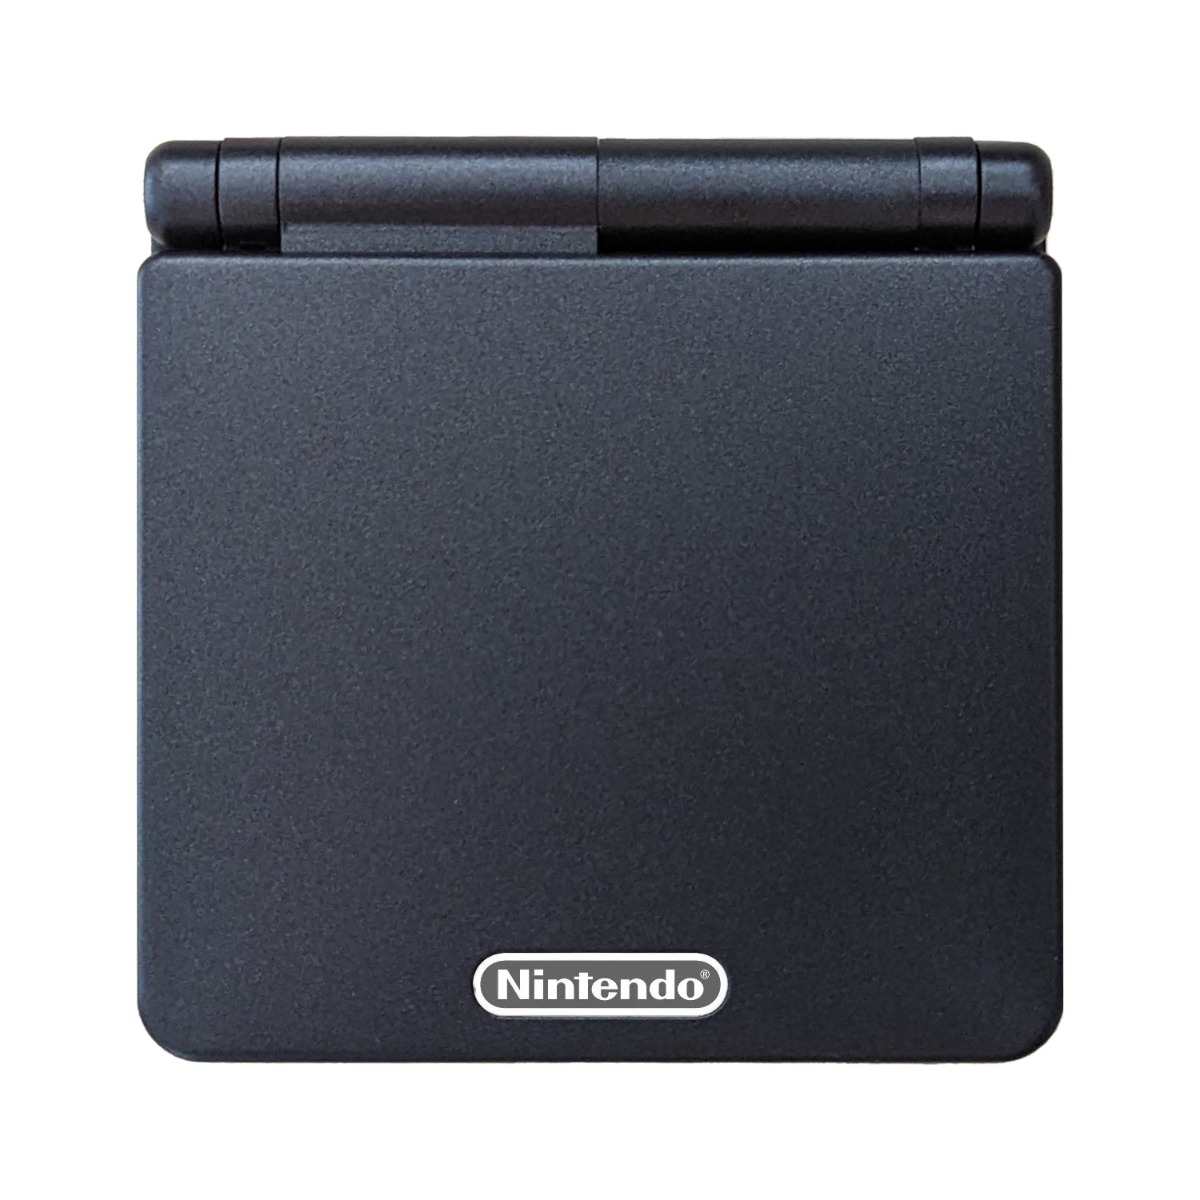 Game Boy Advance SP Gehäuse (Schwarz)